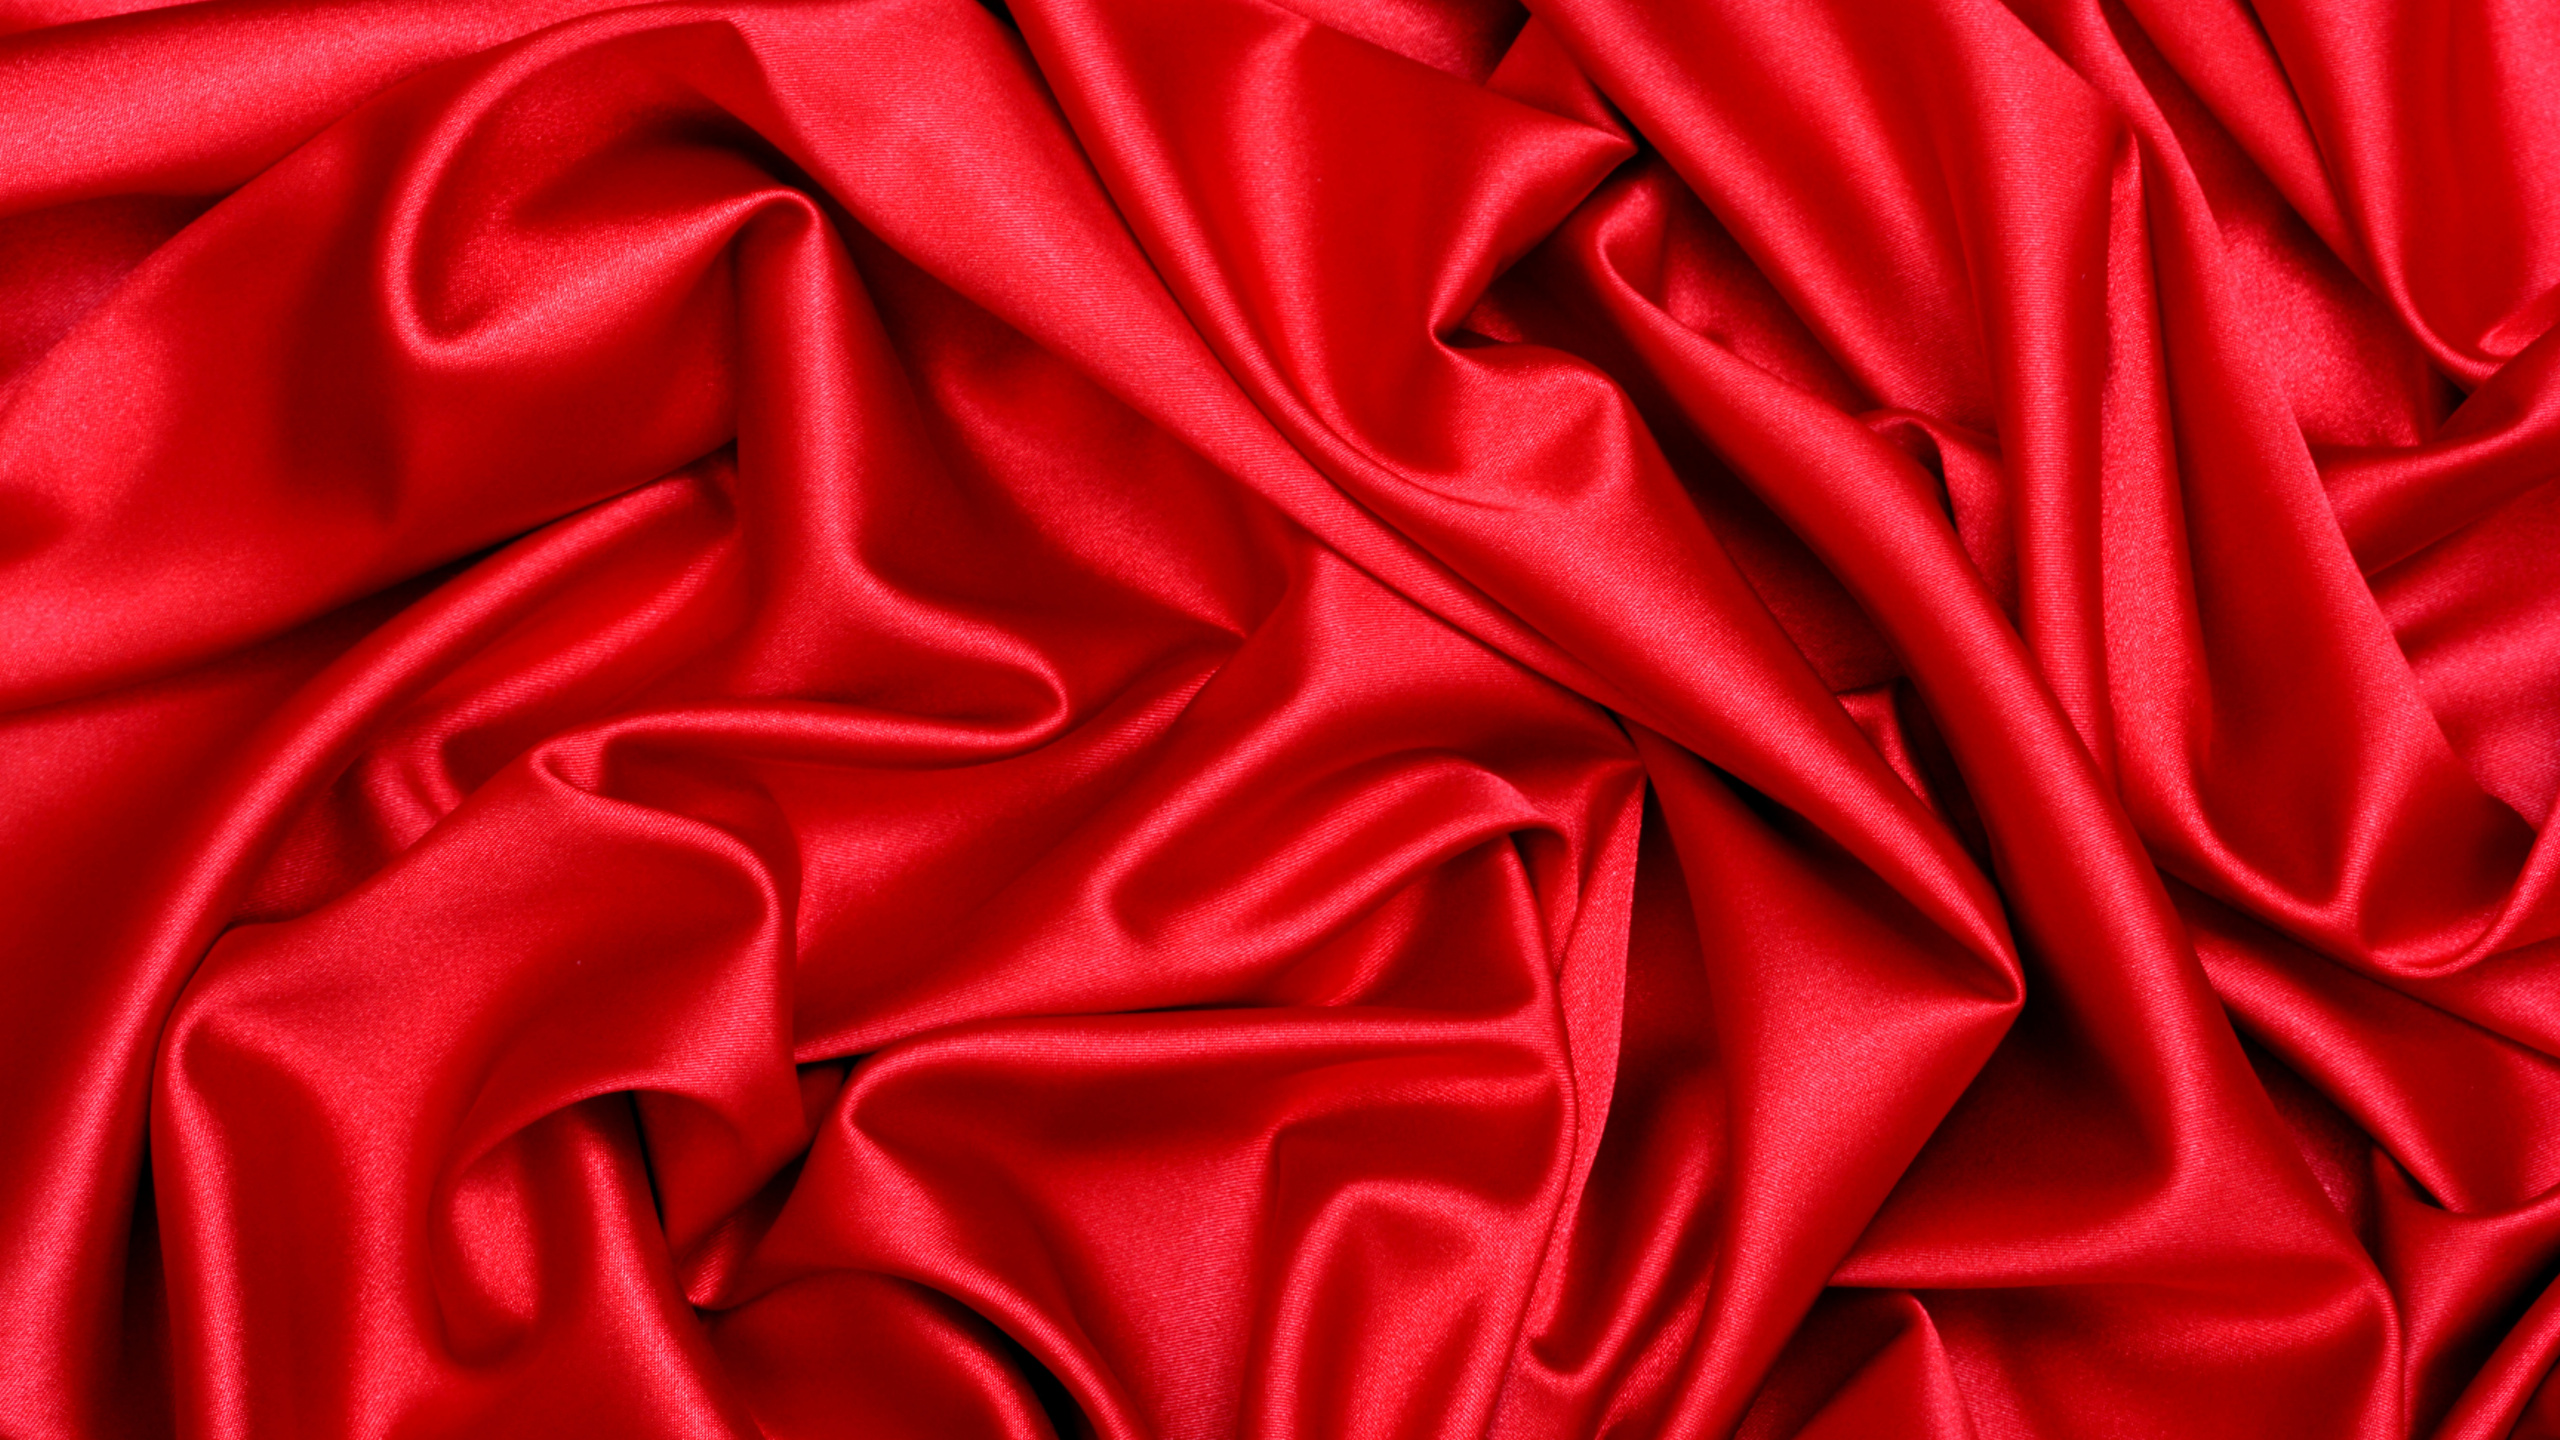 Textil Rojo en Fotografía de Cerca. Wallpaper in 2560x1440 Resolution